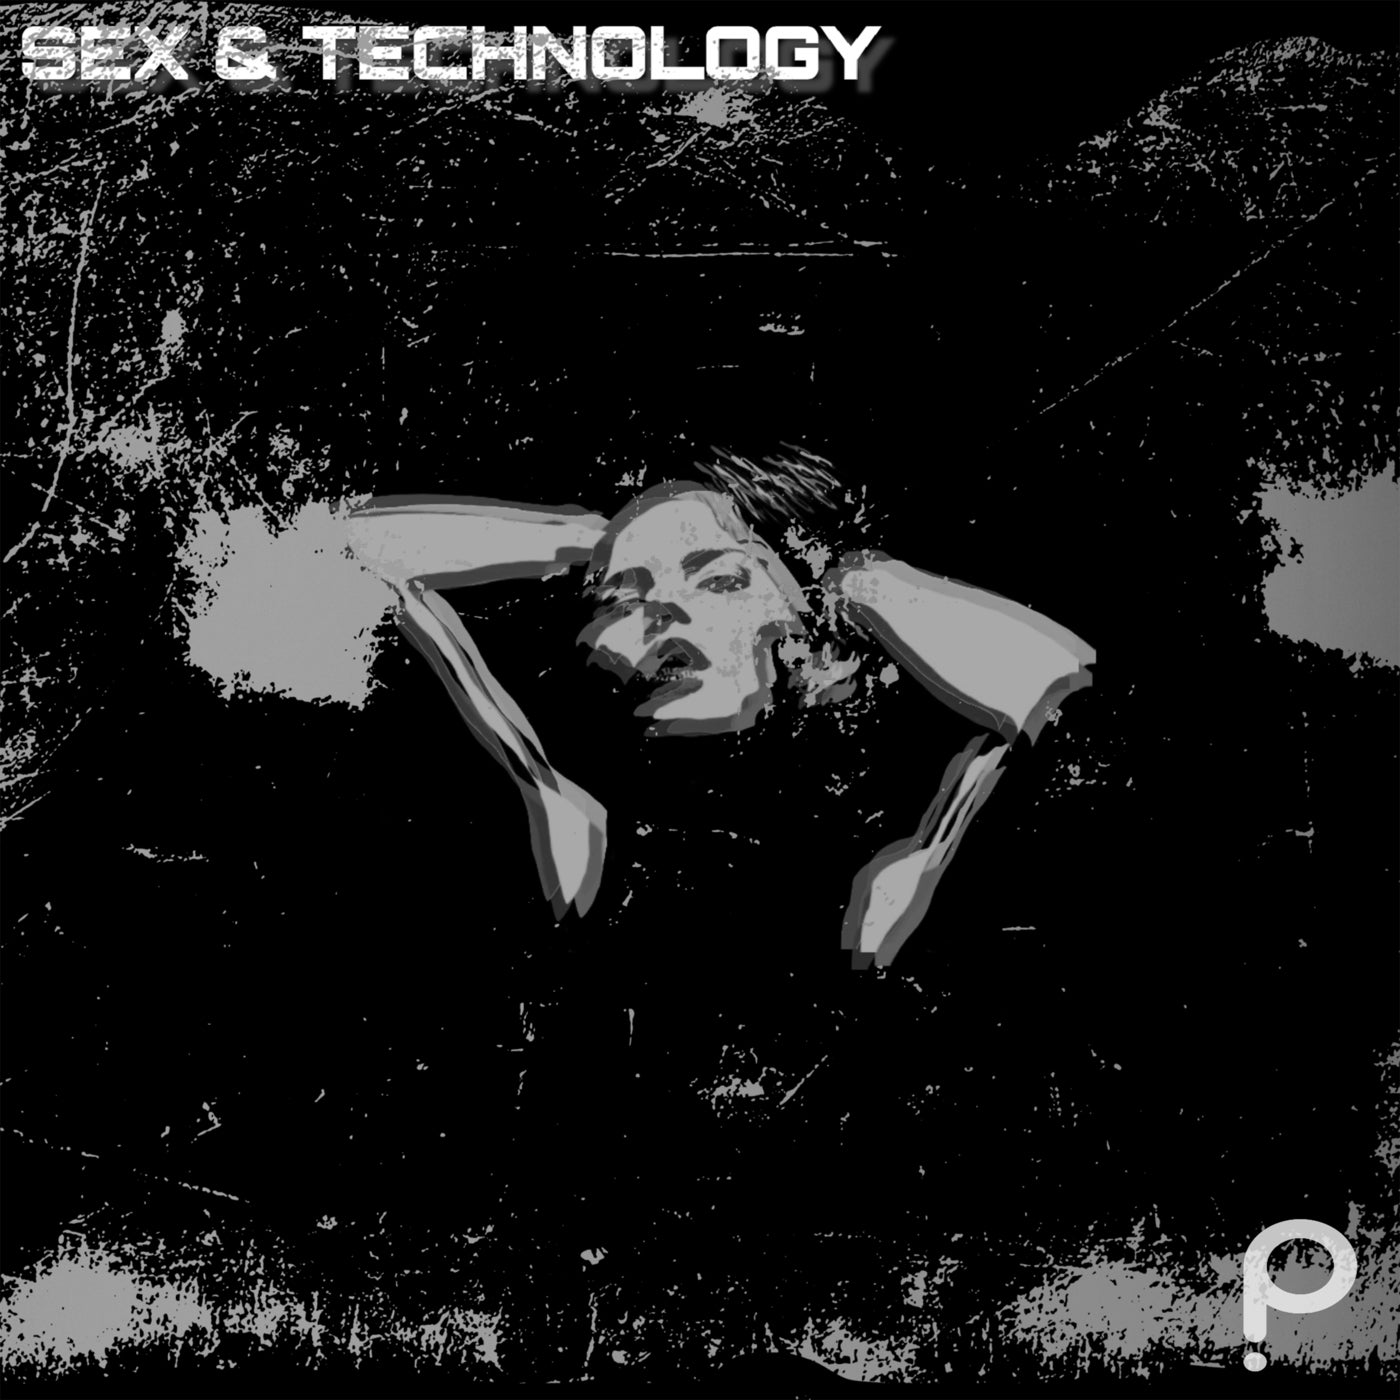 Sex & Technology (Remixes)